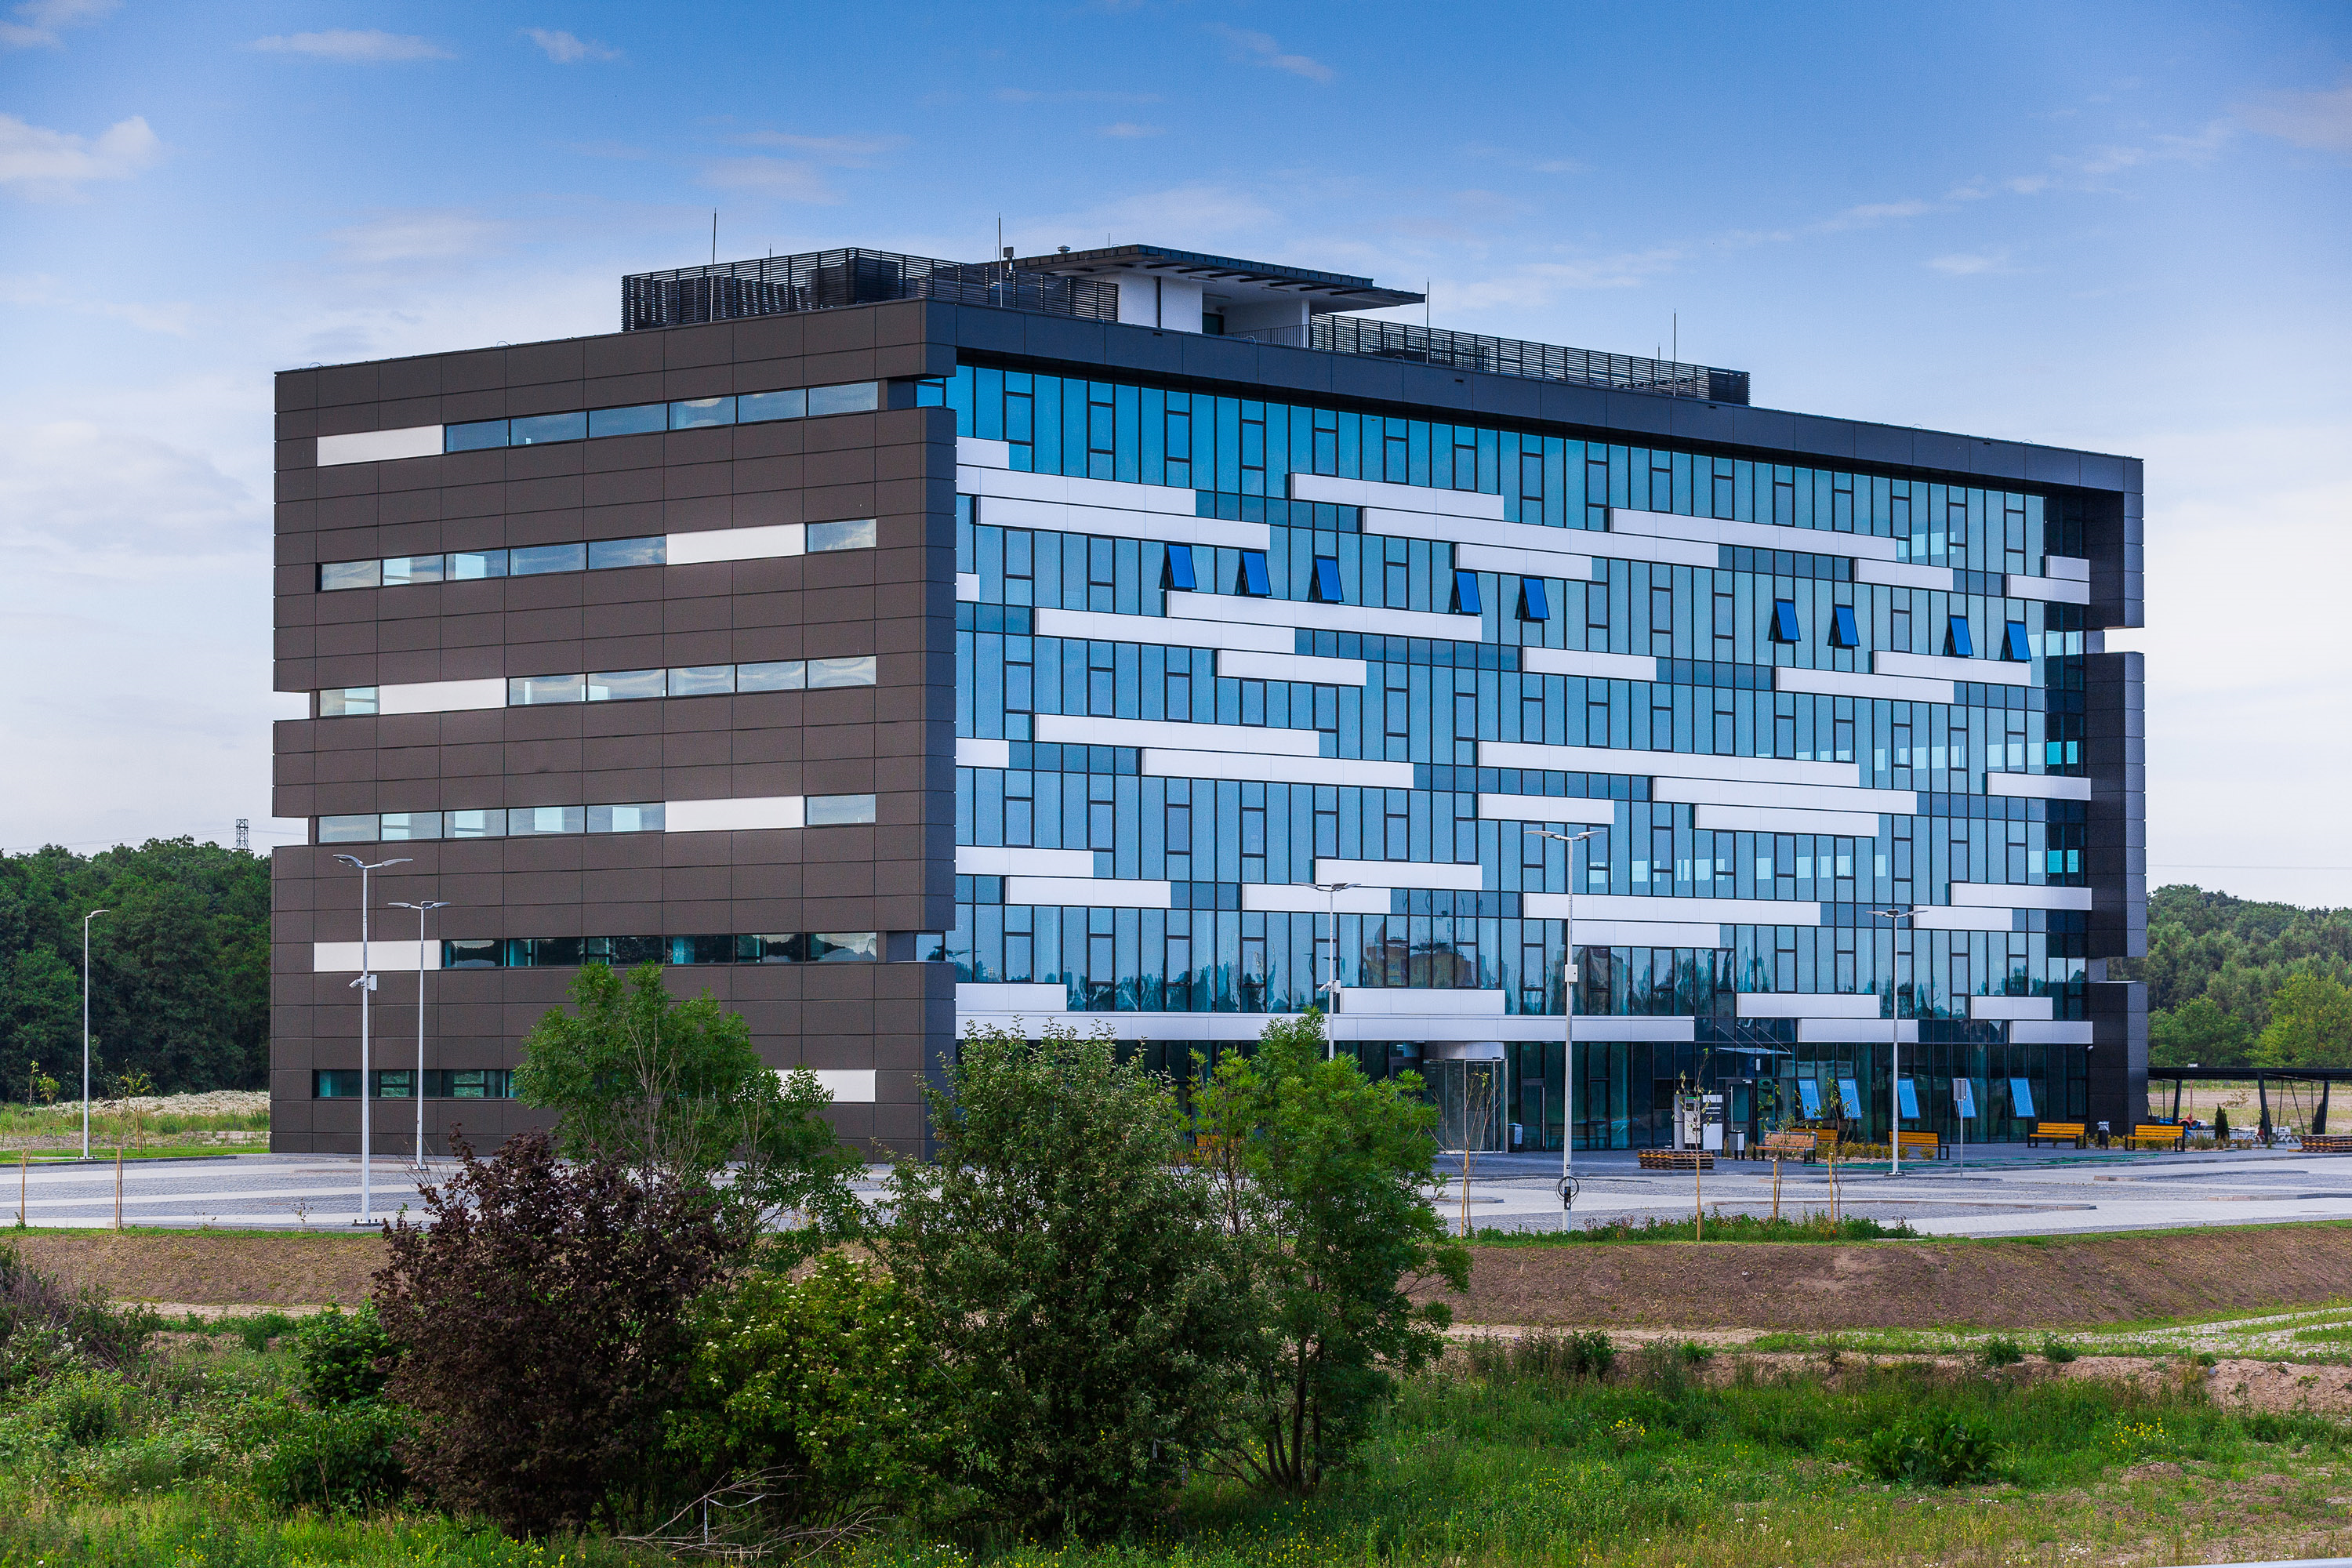 Biurowiec Koga na terenie Pomorskiego Centrum Logistycznego w Gdańsku